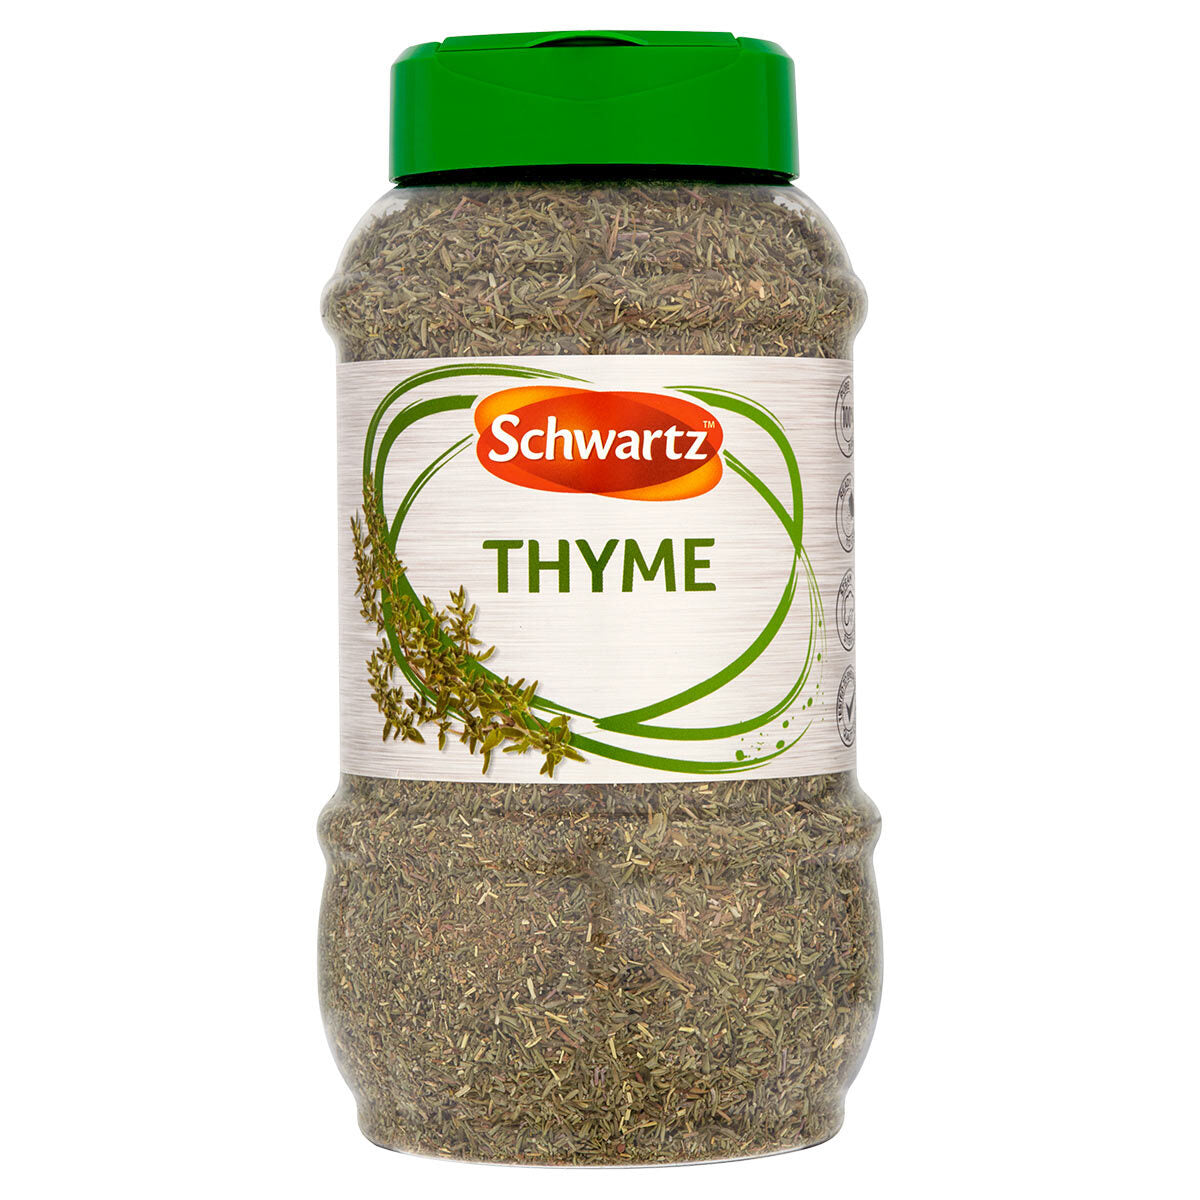 Schwartz Thyme, 165g Spices Costco UK   